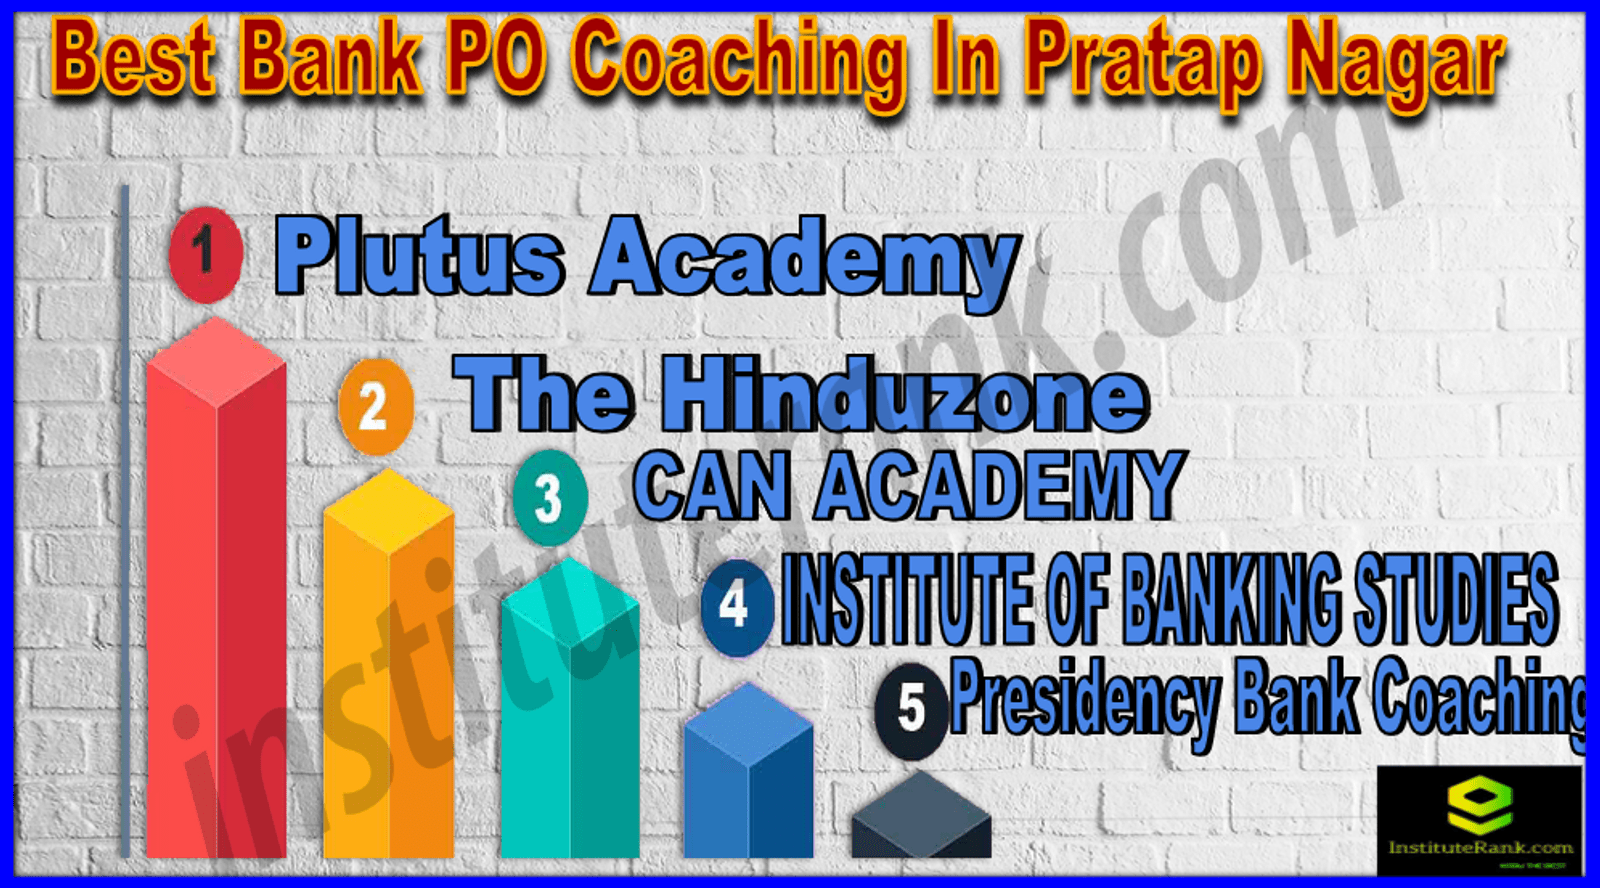 Best Bank PO Coaching In Pratap Nagar